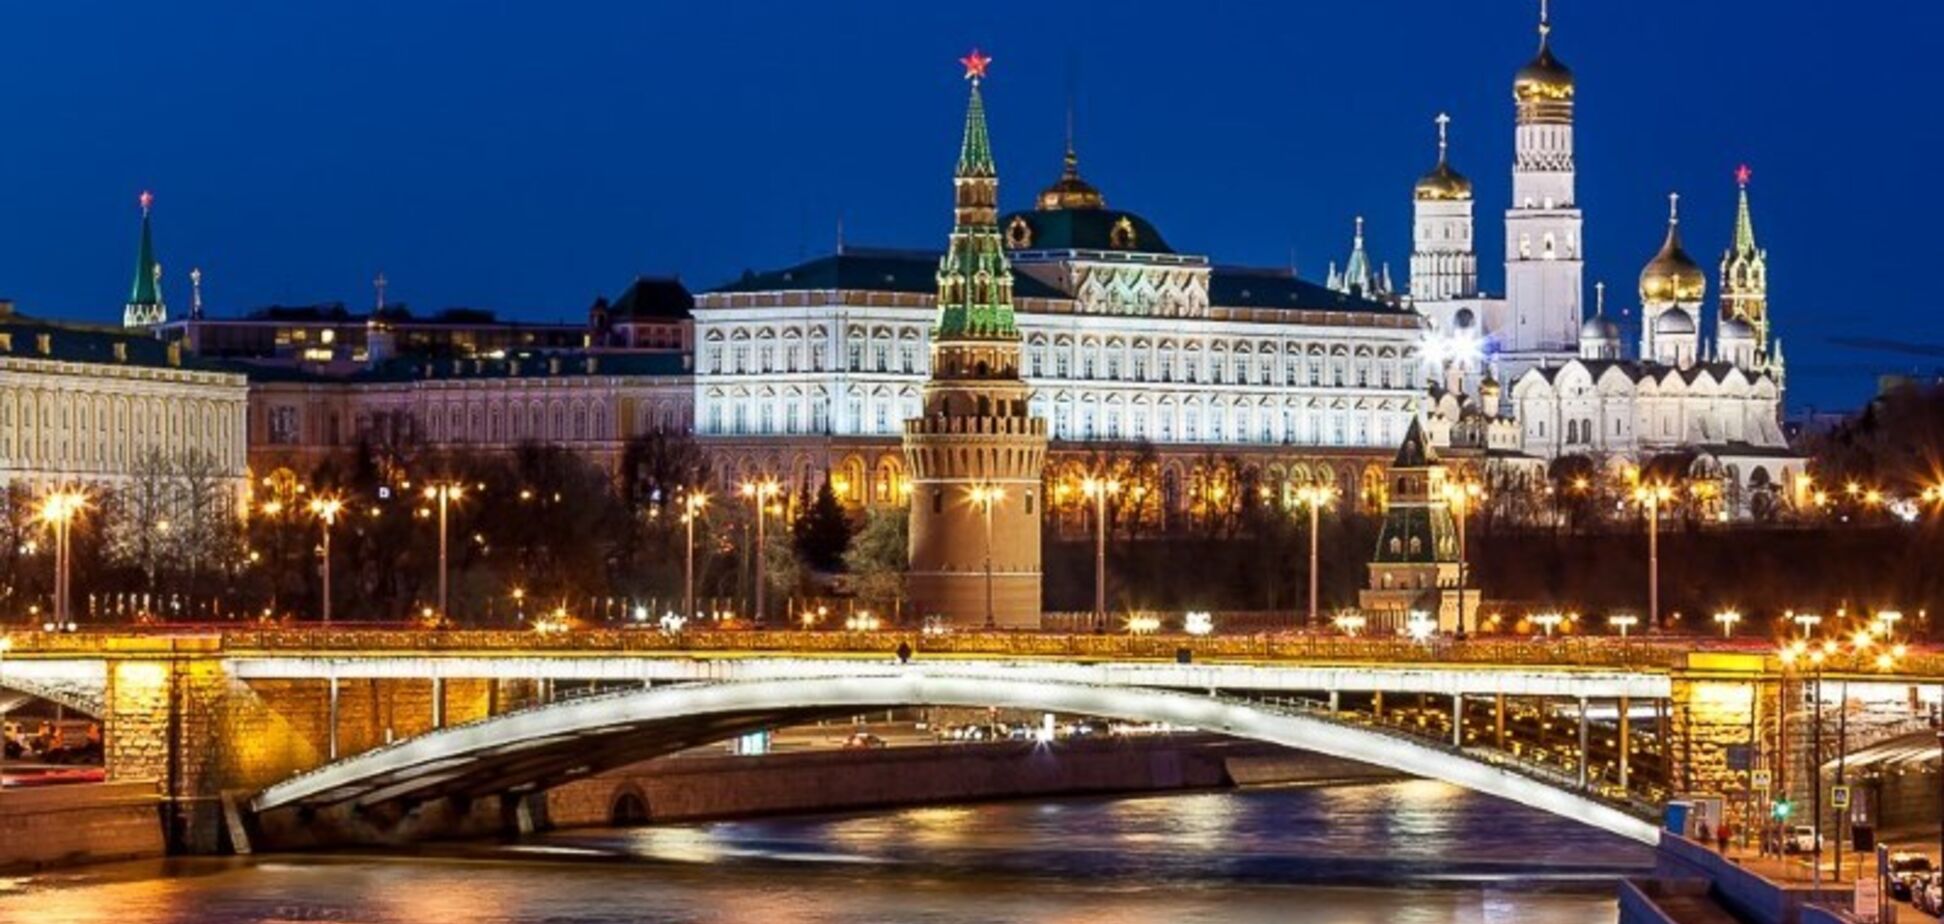 От иллюзии 'величия' Кремля не осталось и следа